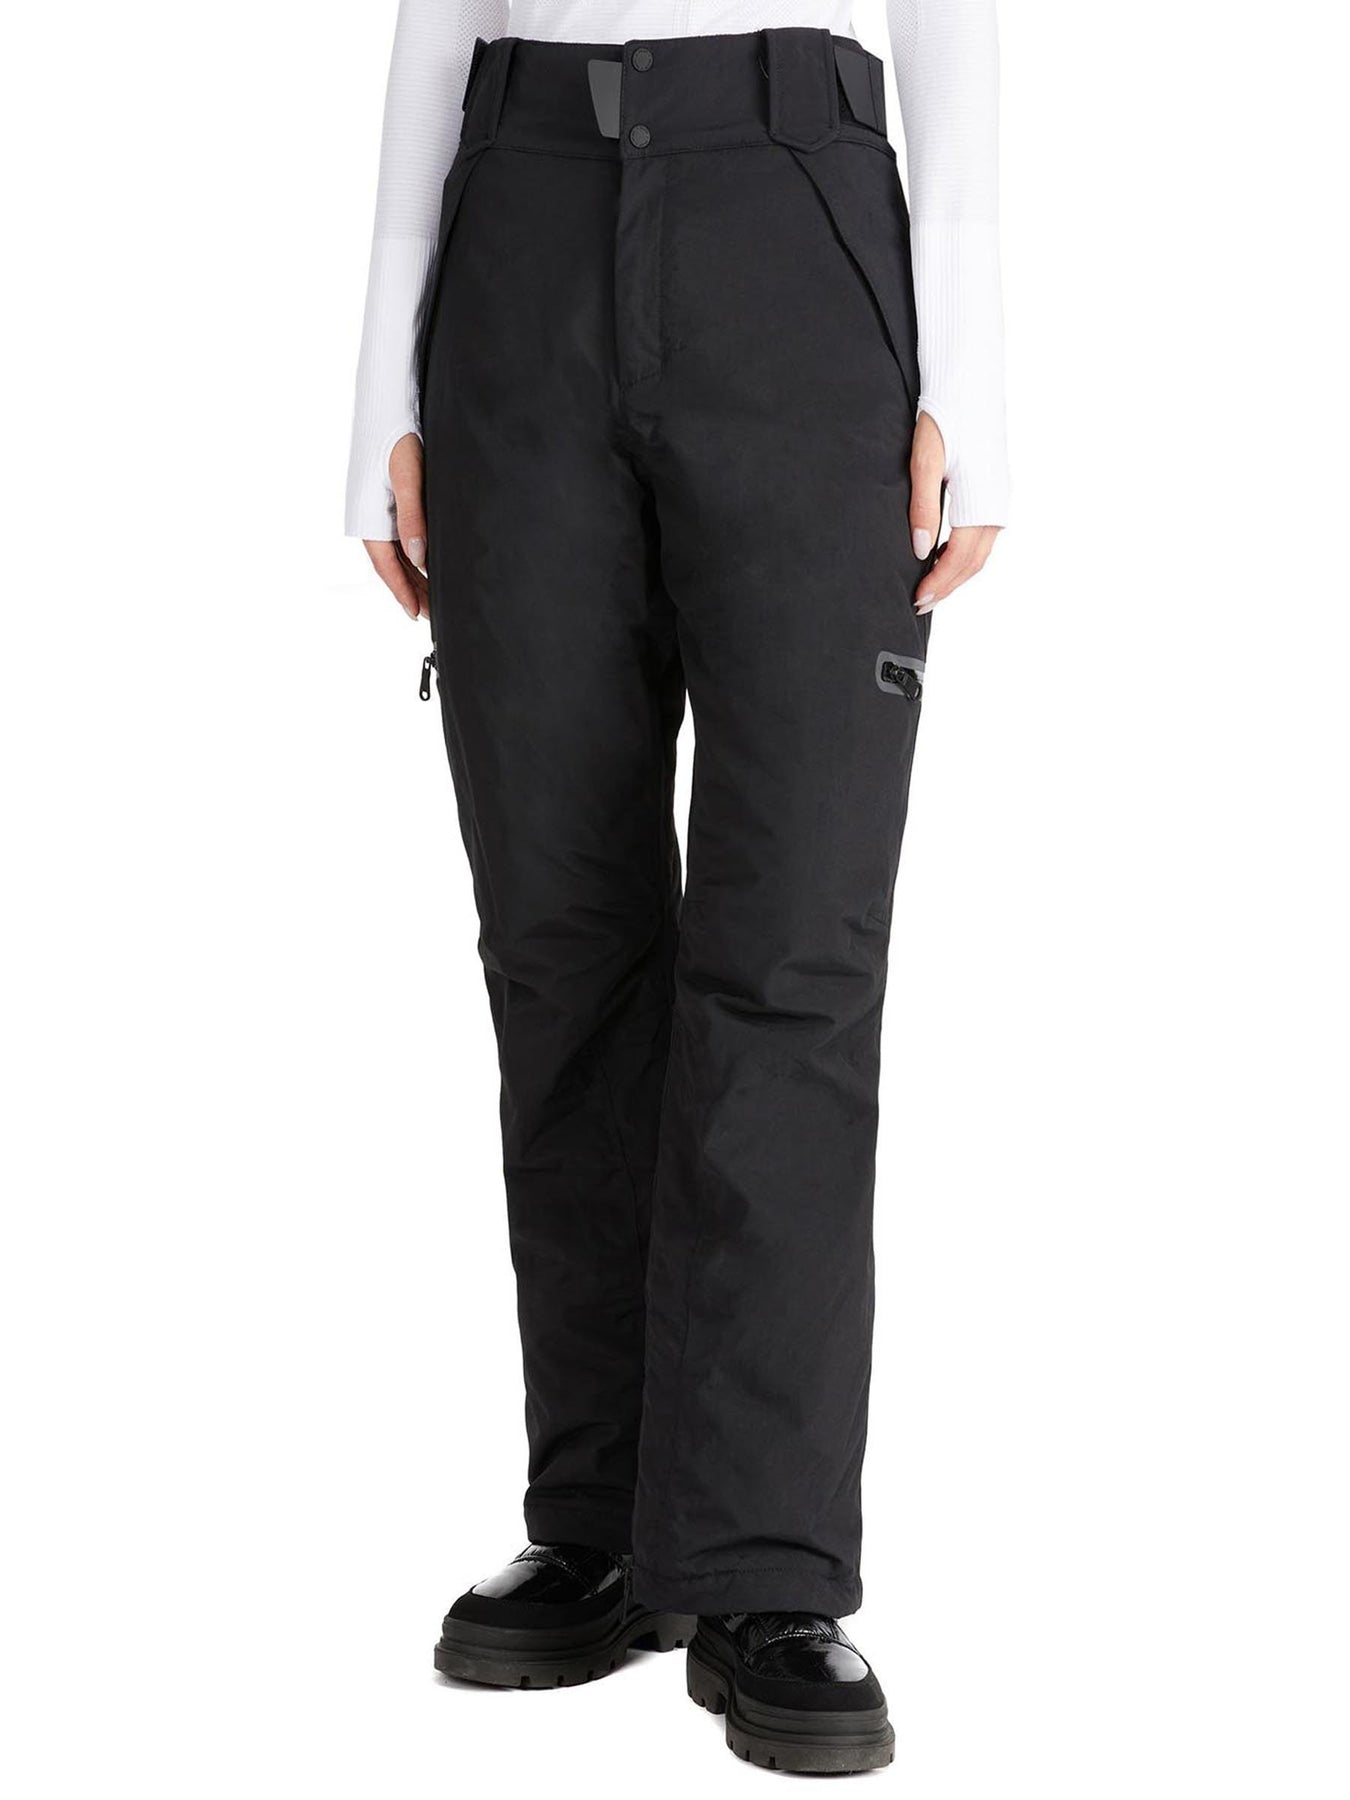 Poederbaas Technical Thermal Trousers women - Black - Wintersport